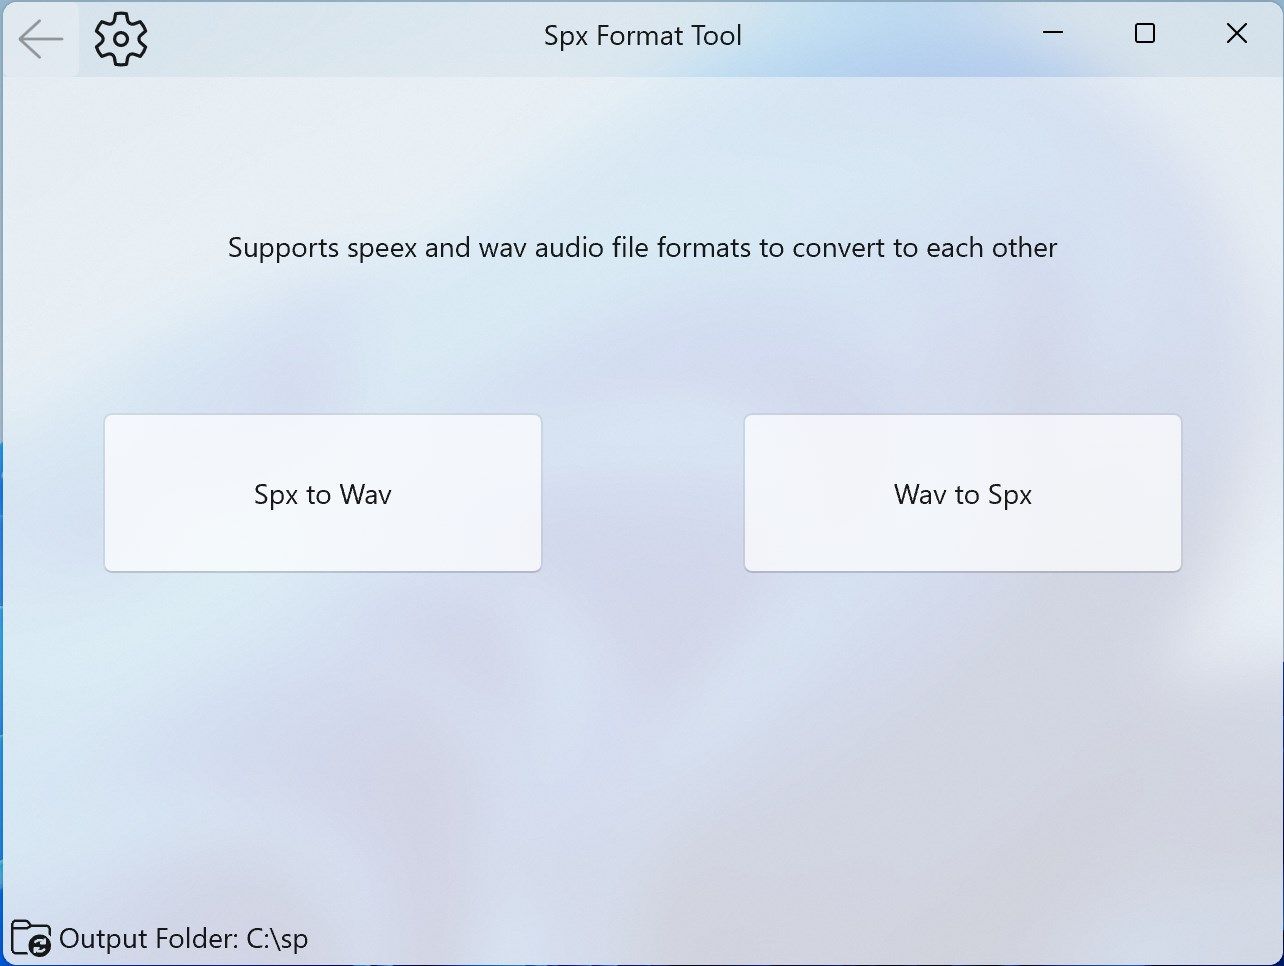 Spx format tool